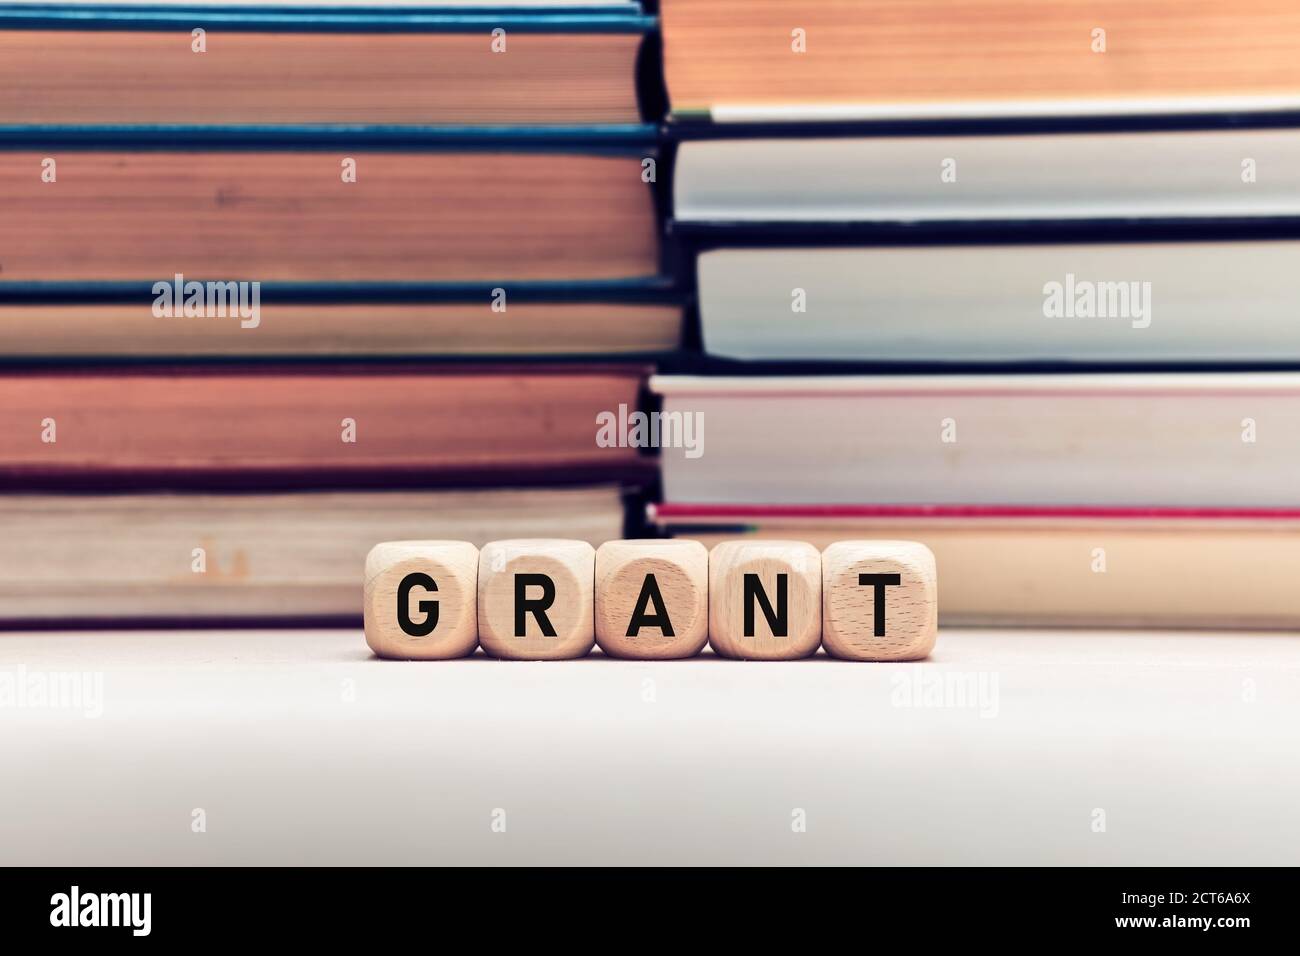 Das Wort Grant auf Holzwürfel vor gestapelten Büchern Hintergrund. Konzept der Förderung von Bildung oder Forschung. Stockfoto